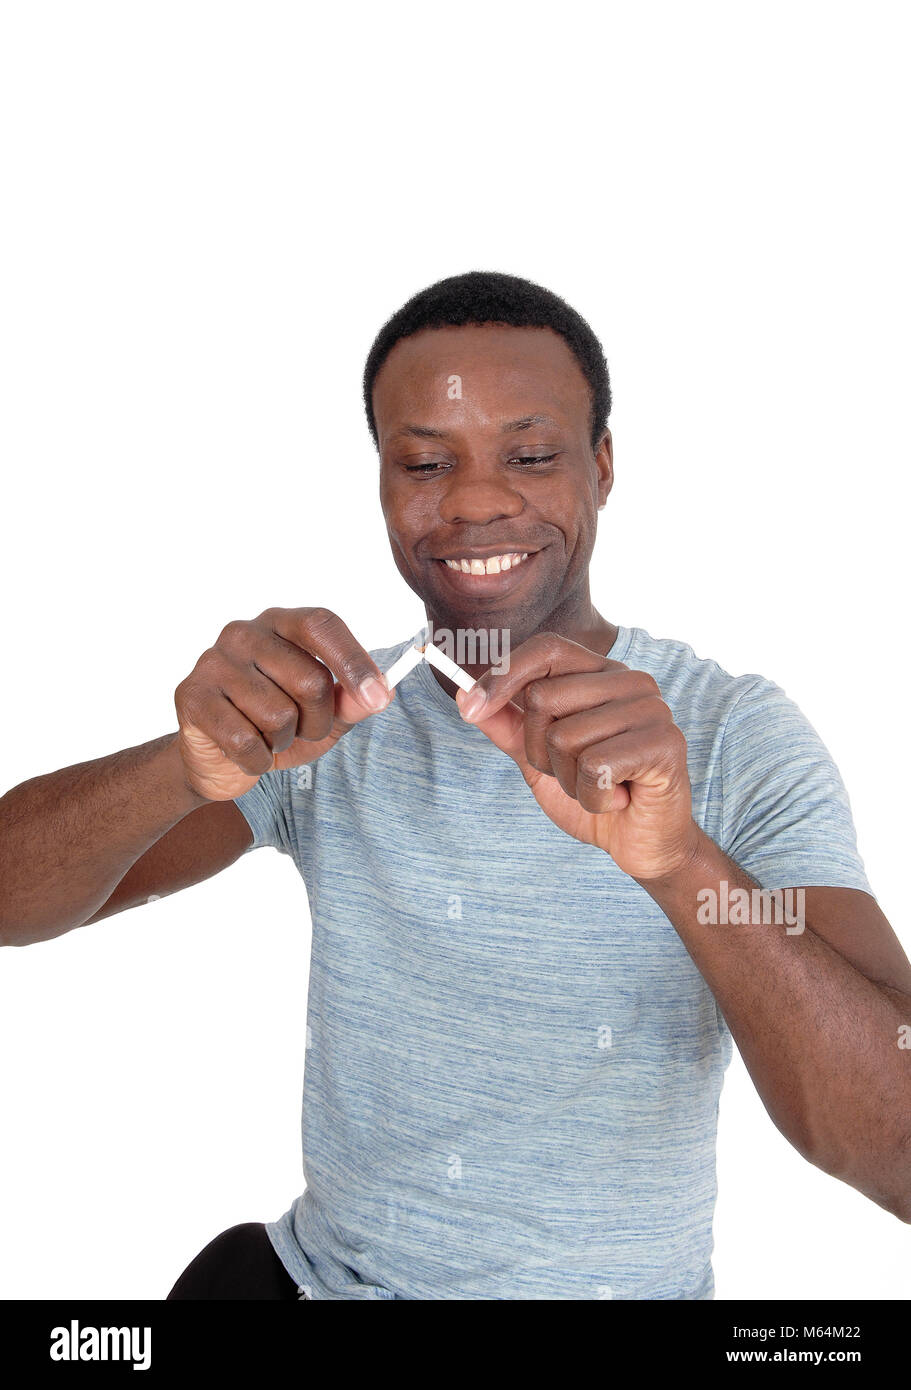 Un bel giovane americano africano uomo in una chiusura immagine è la rottura di una sigaretta è felice di smettere di fumare, isolato su bianco Foto Stock